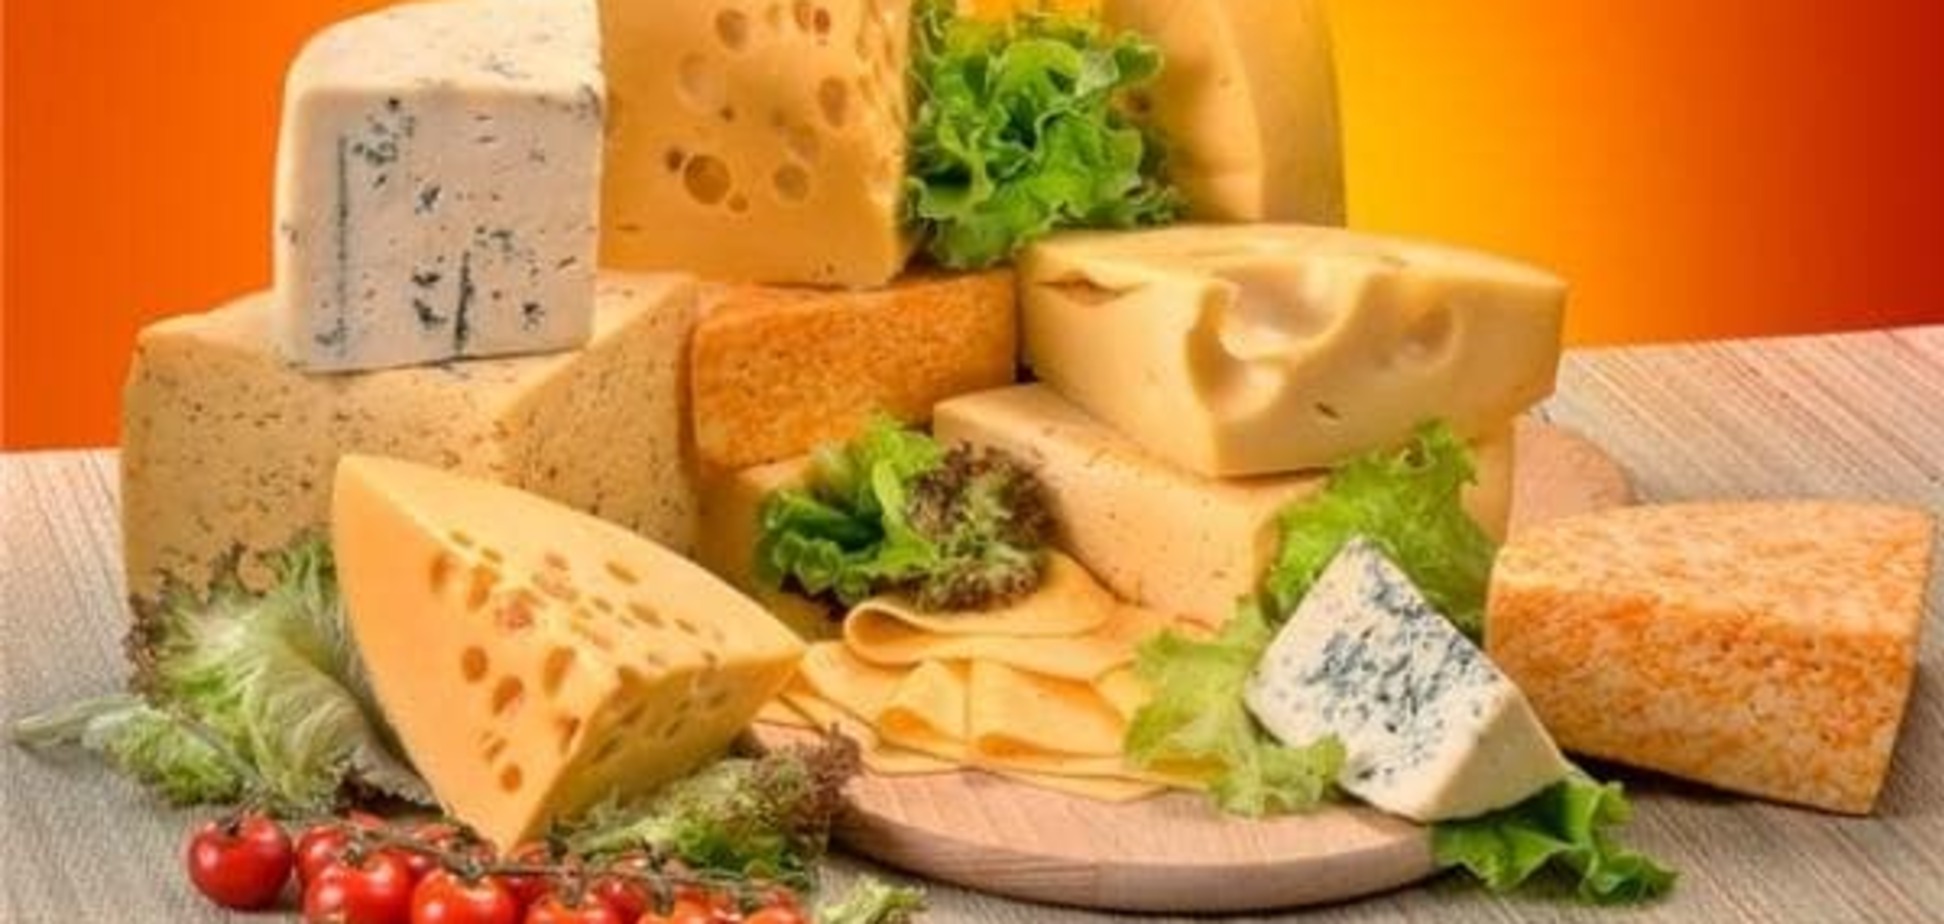 Медики заявили, что сыр может стать причиной рака 